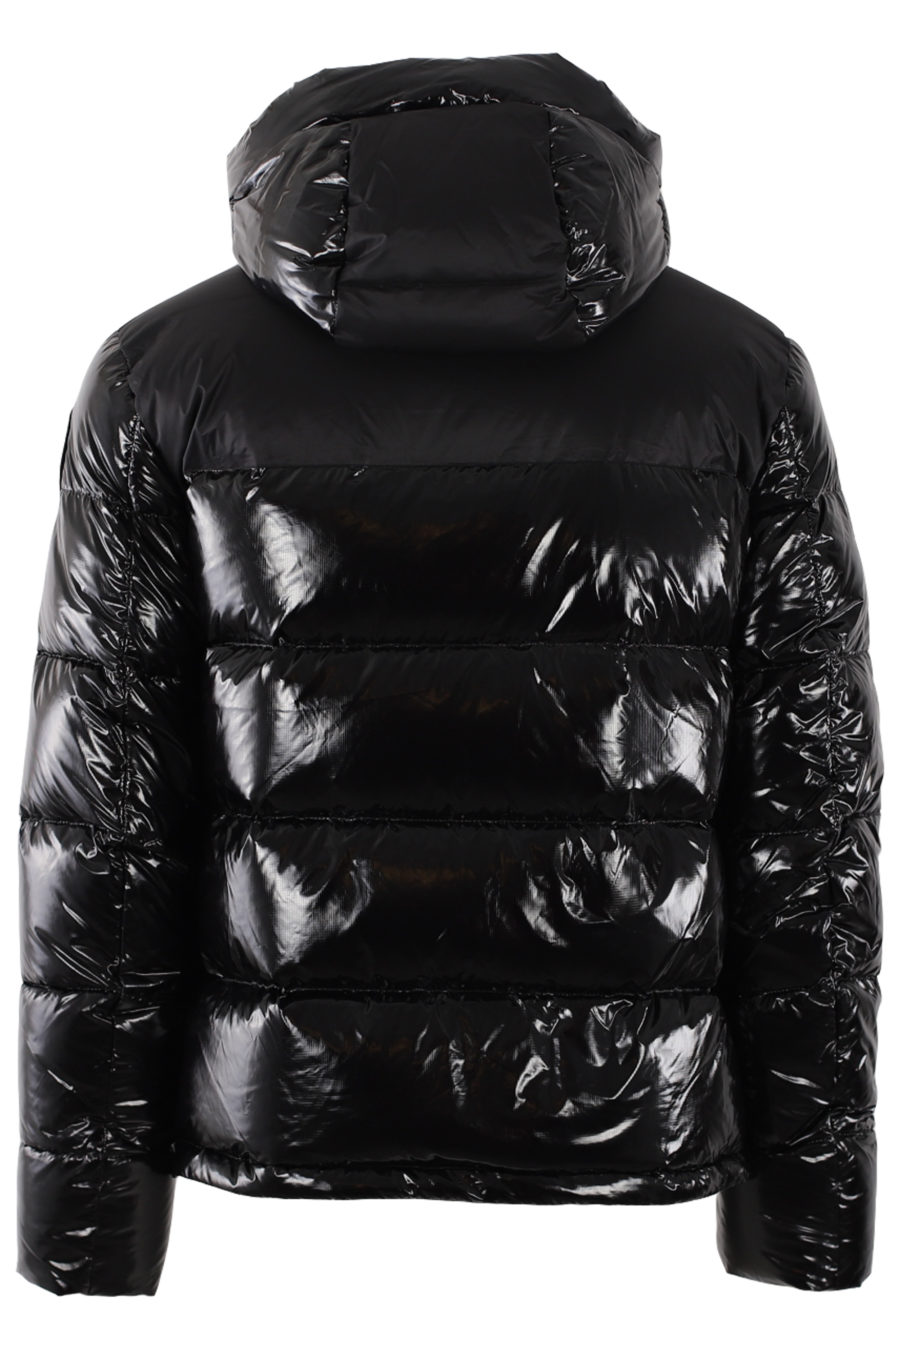 Black shiny jacket - IMG 0497